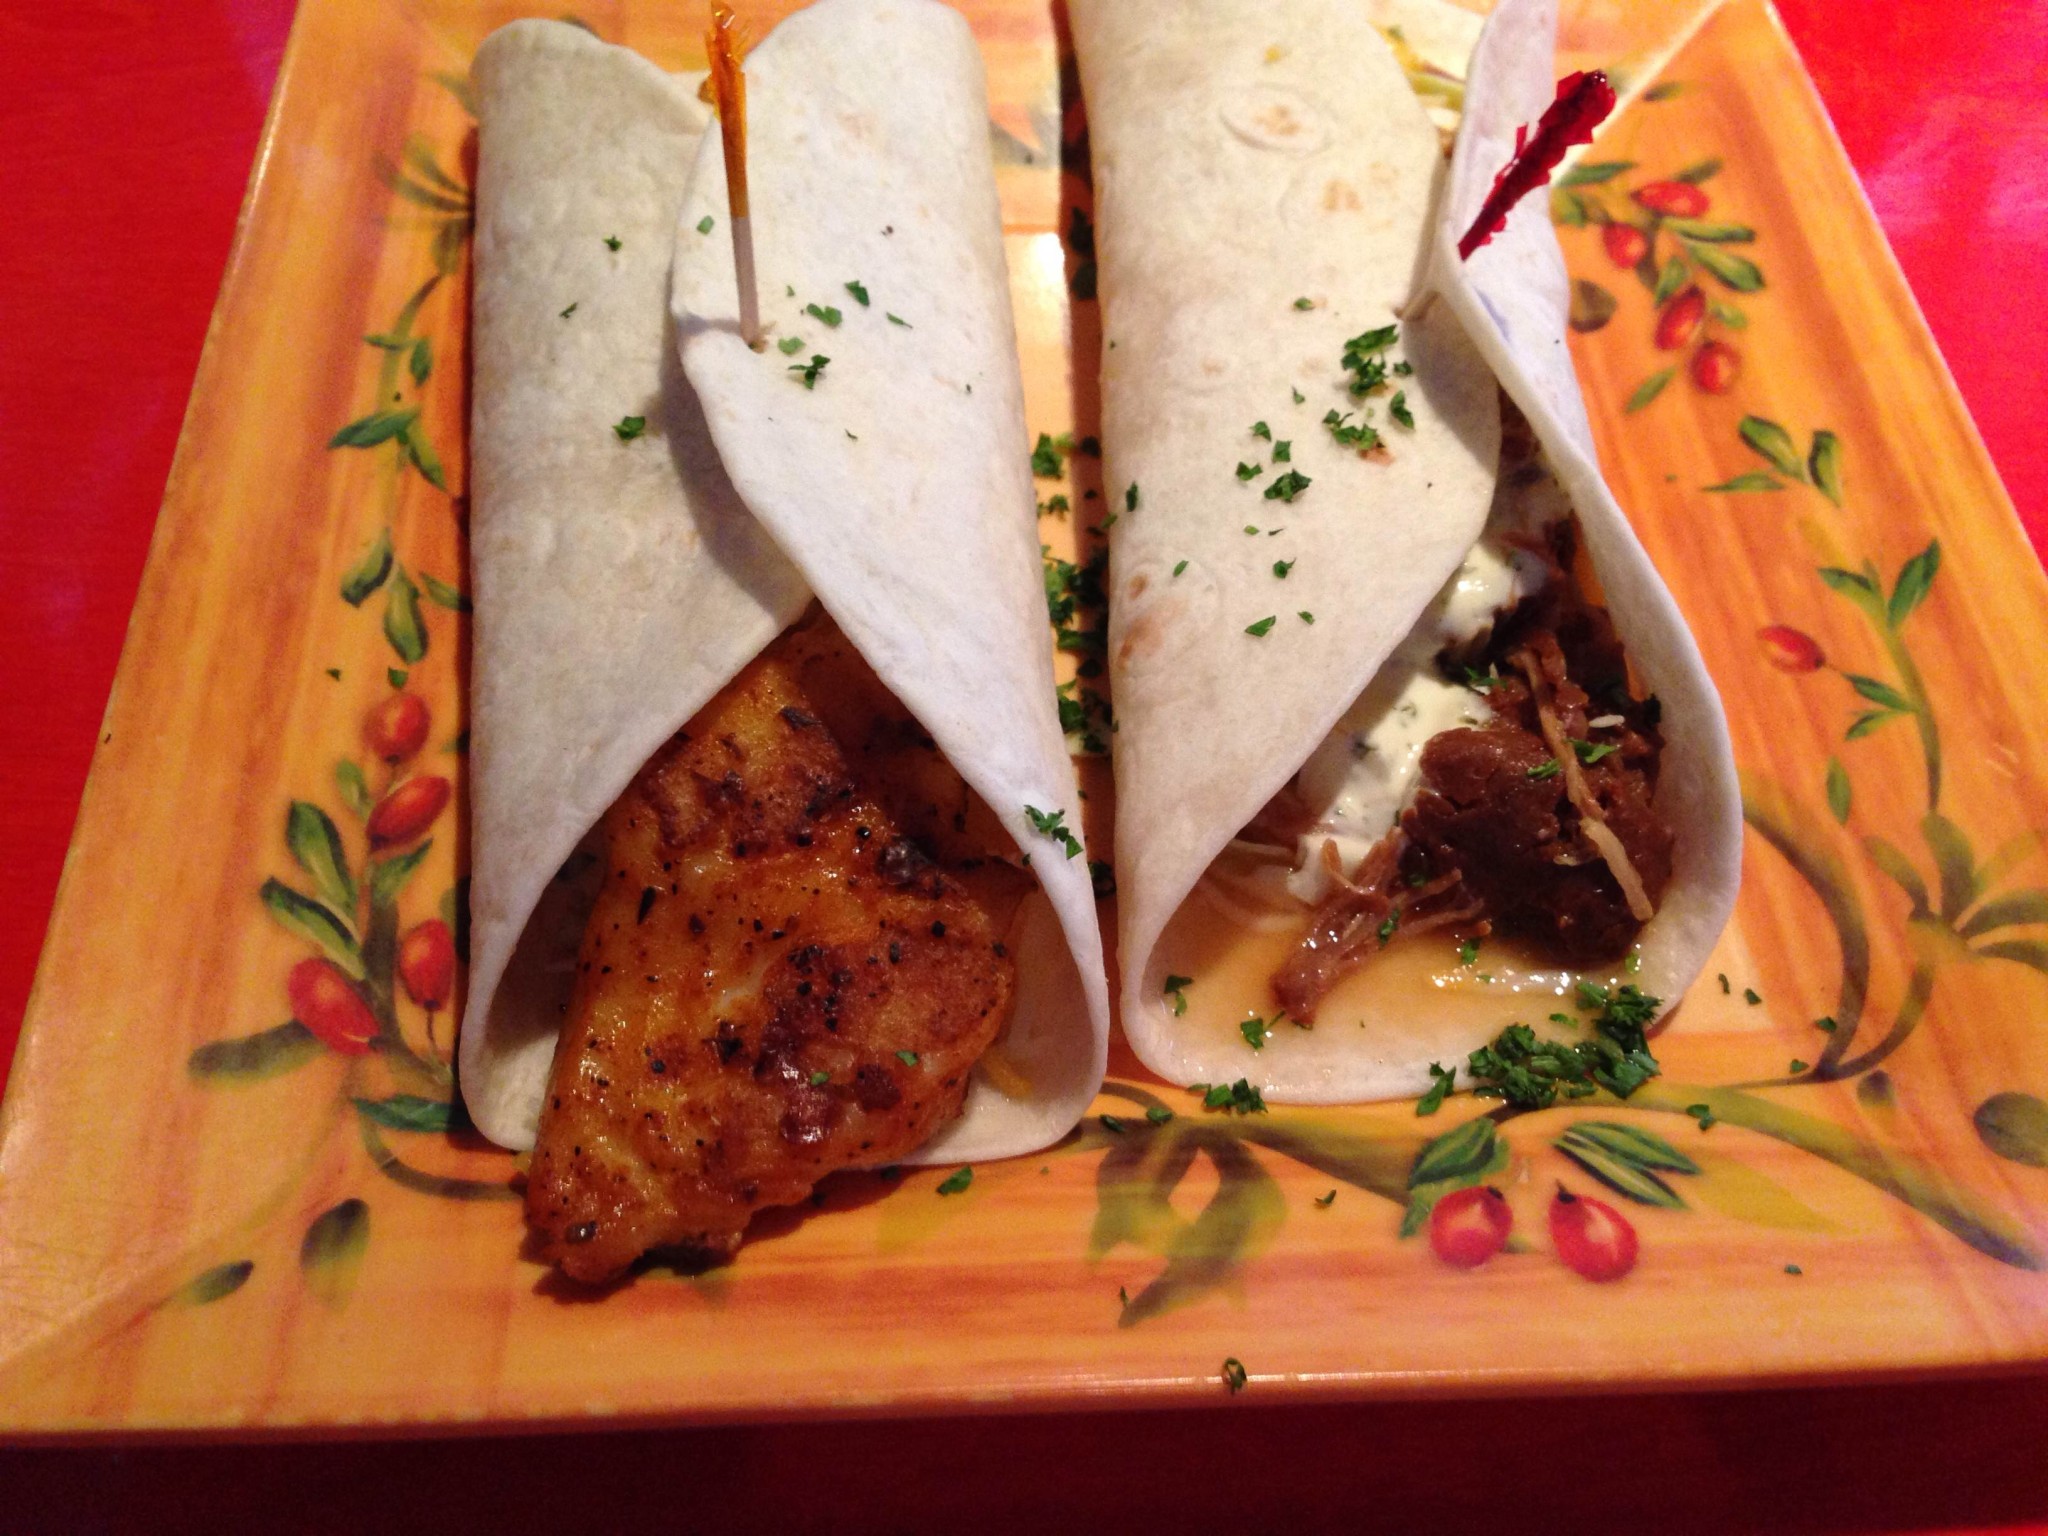 Lolas Burrito Joint Fish Taco and Carnitas Taco